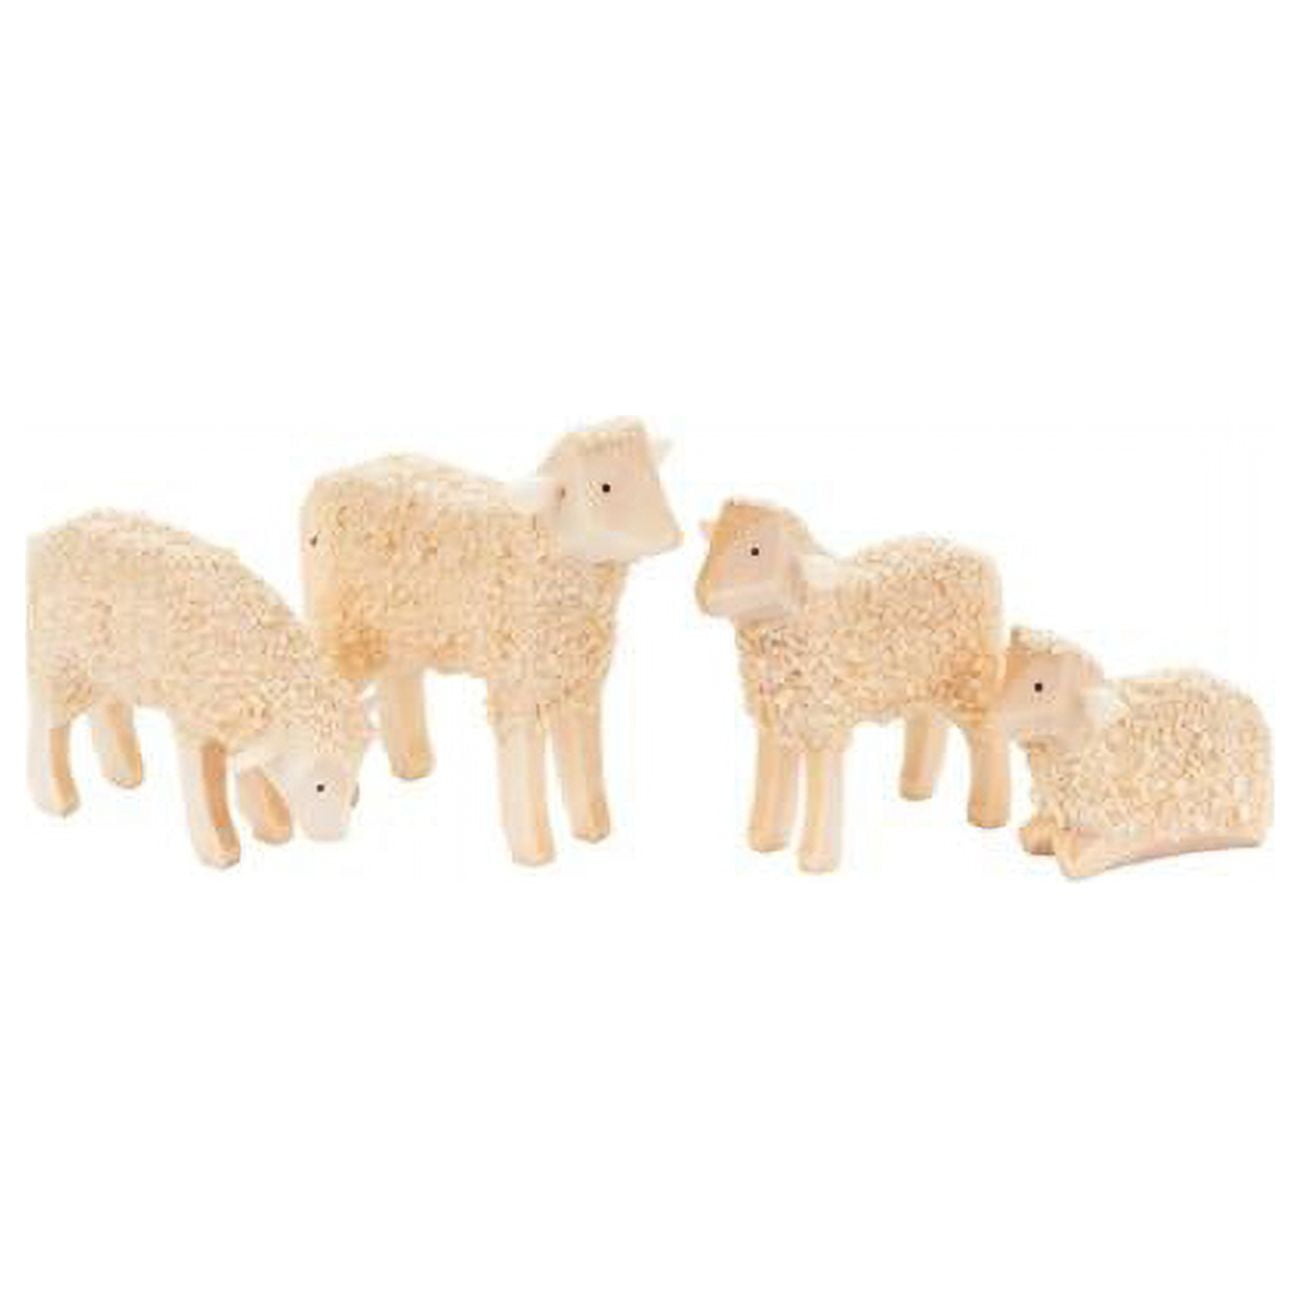 076-061 Dregeno Easter Figures - Sheep